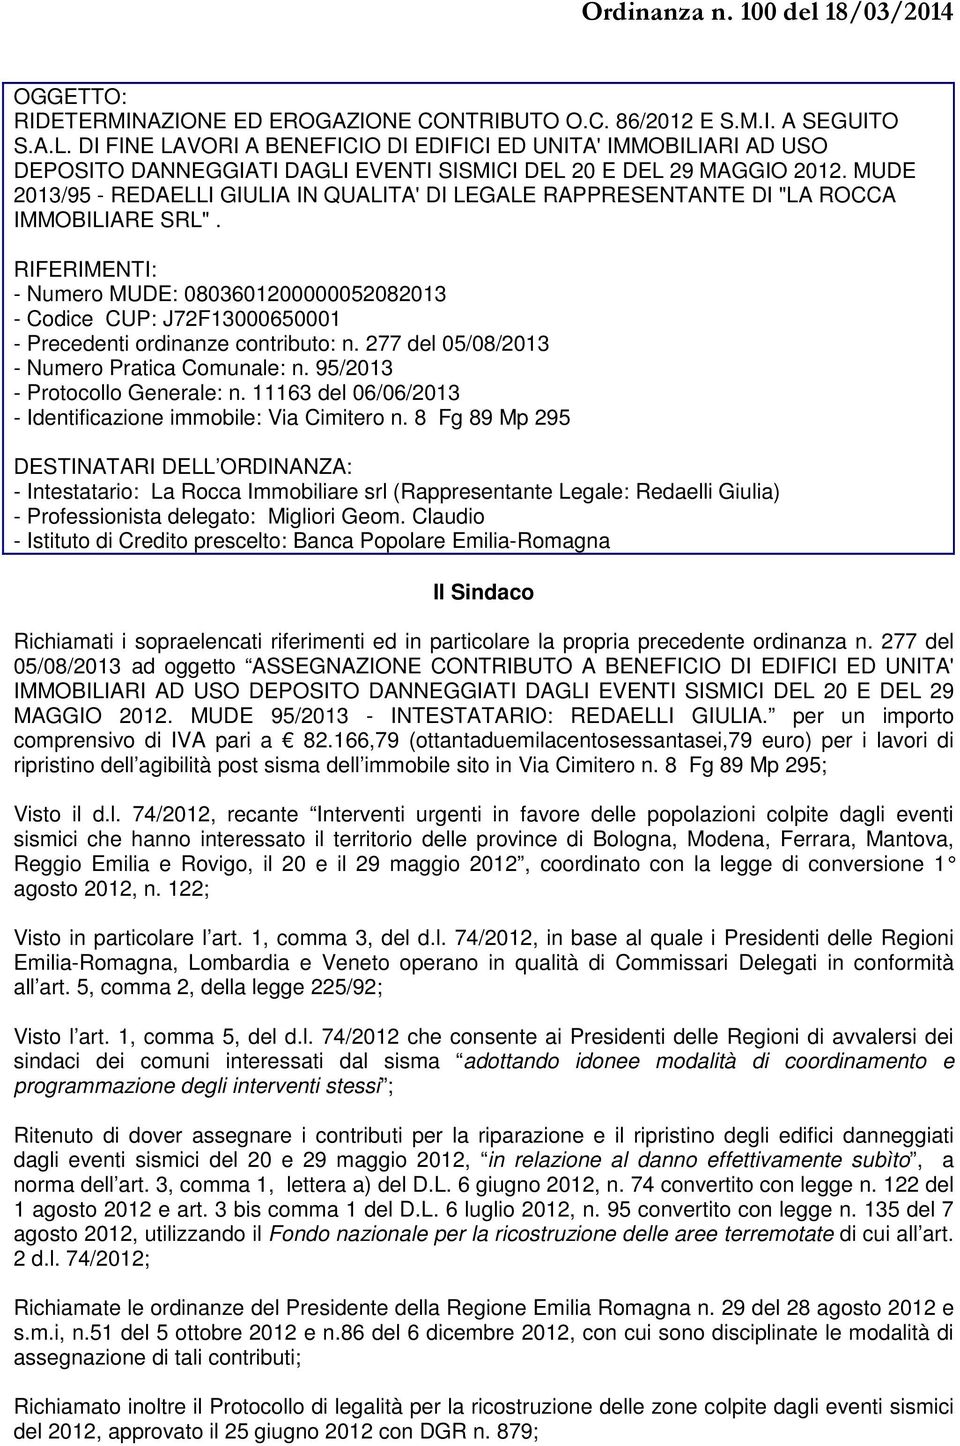 MUDE 2013/95 - REDAELLI GIULIA IN QUALITA' DI LEGALE RAPPRESENTANTE DI "LA ROCCA IMMOBILIARE SRL".